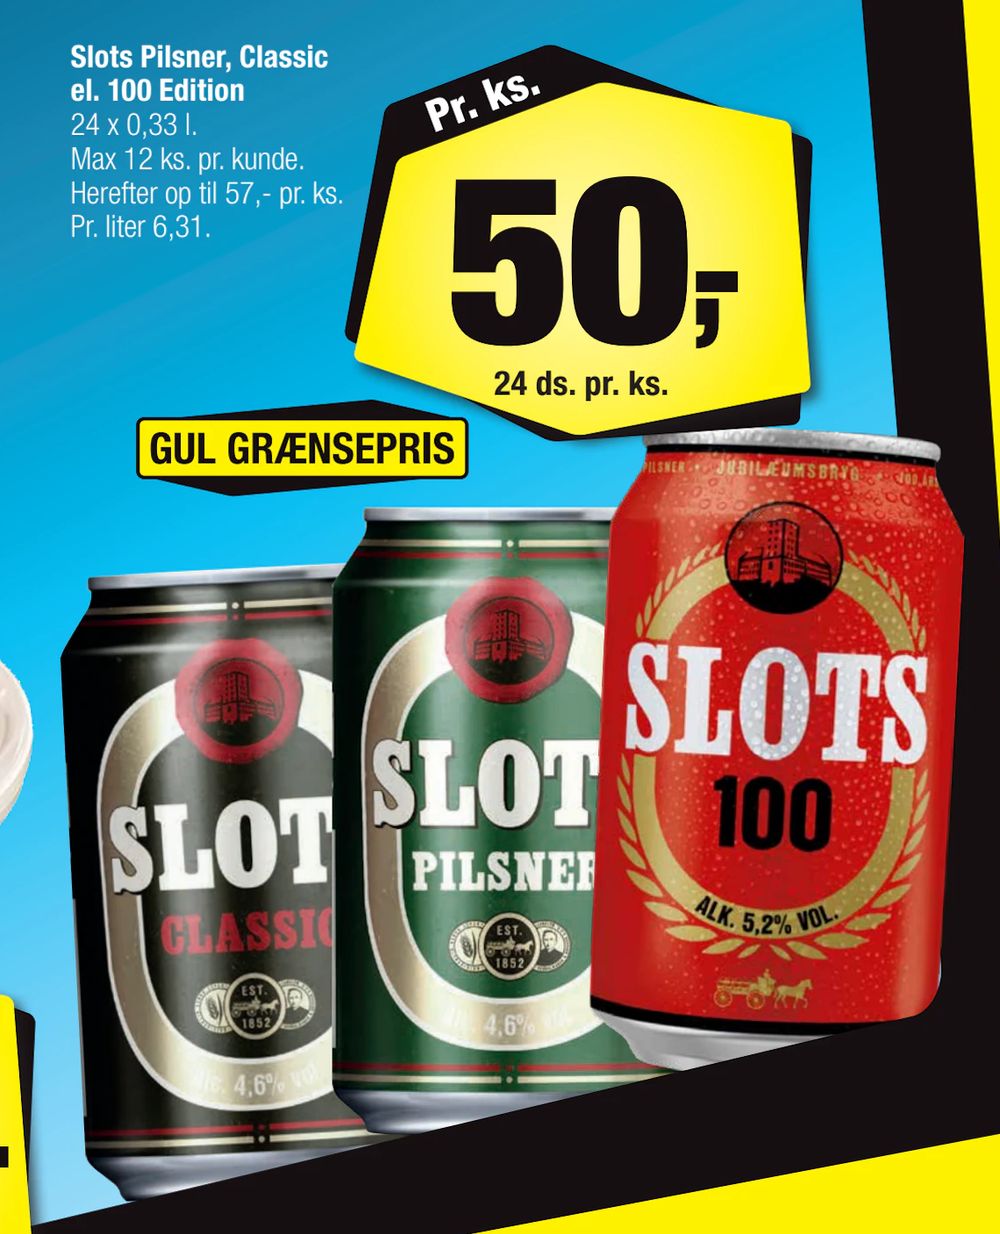 Tilbud på Slots Pilsner, Classic el. 100 Edition fra Calle til 50 kr.